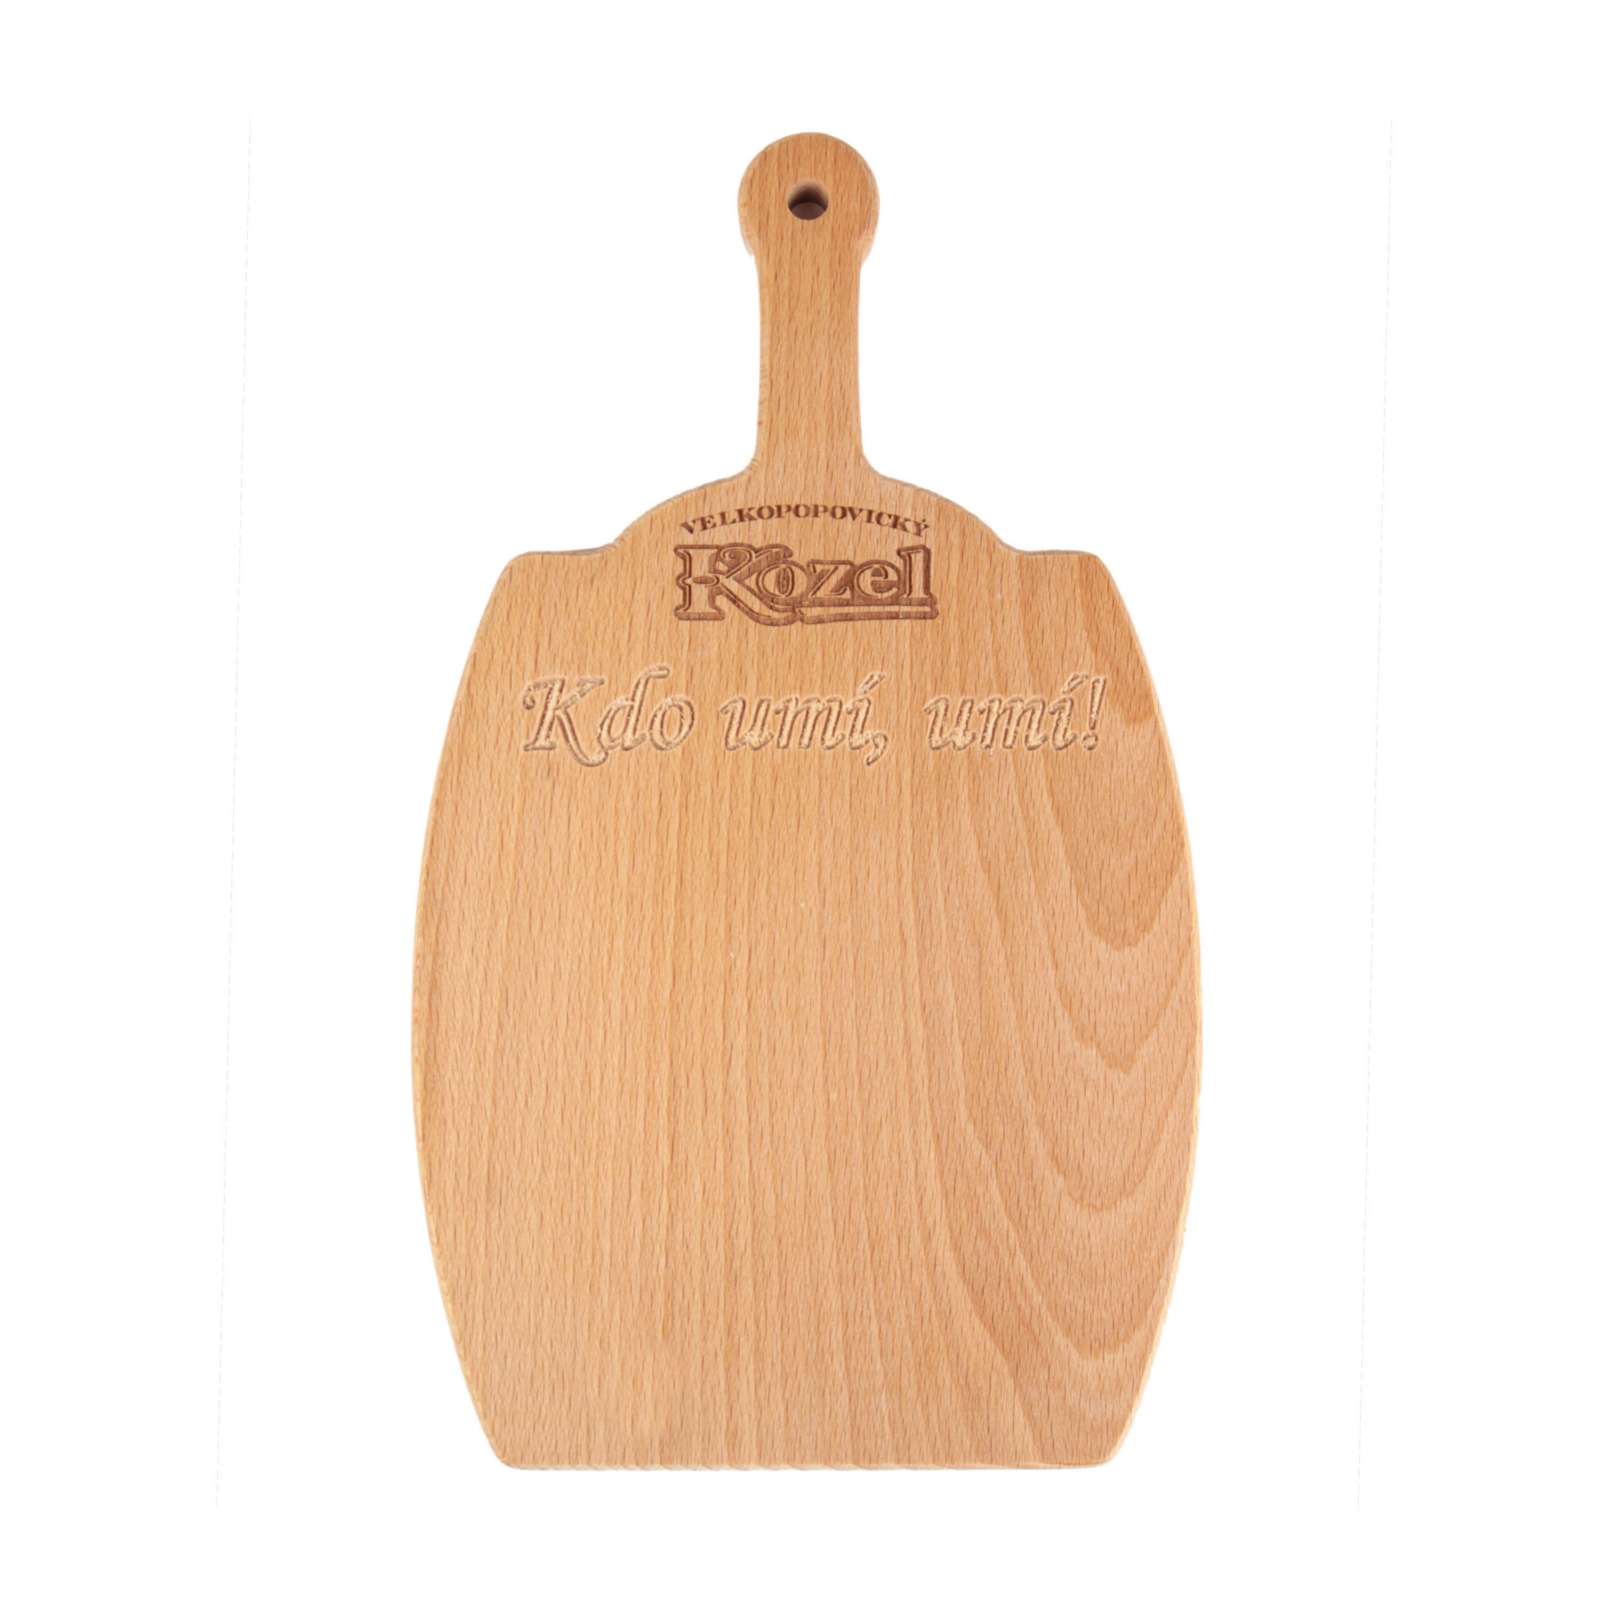 Kozel wooden board - small keg with inscription